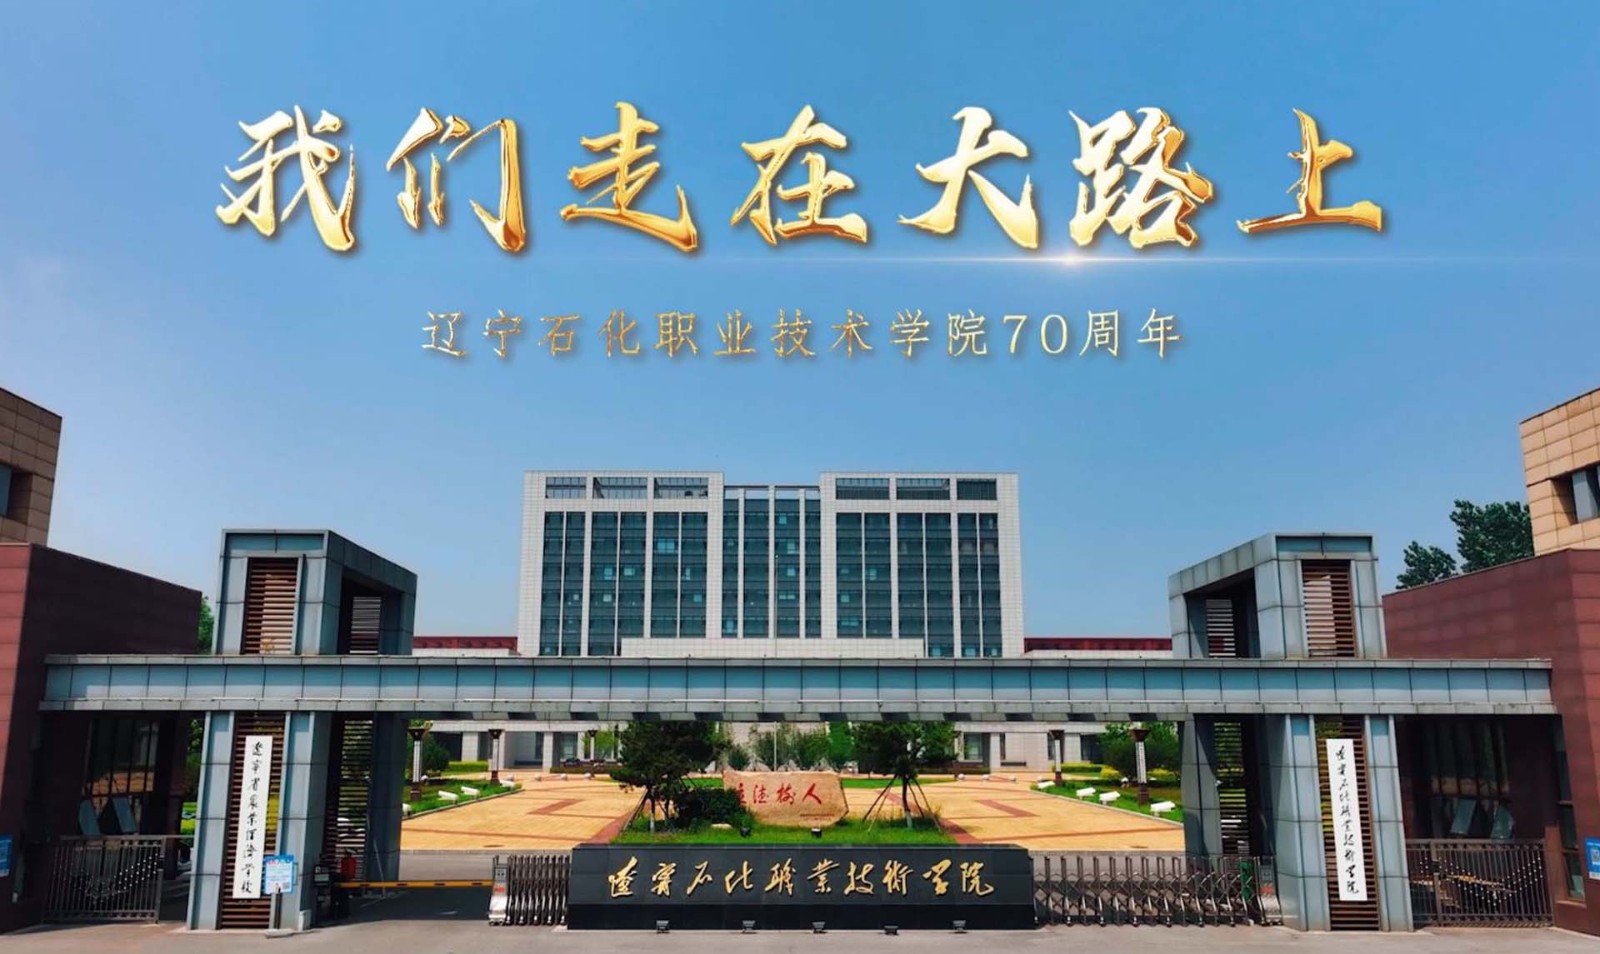 《我们走在大路上》——辽宁石化职业技术学院70周年宣传片